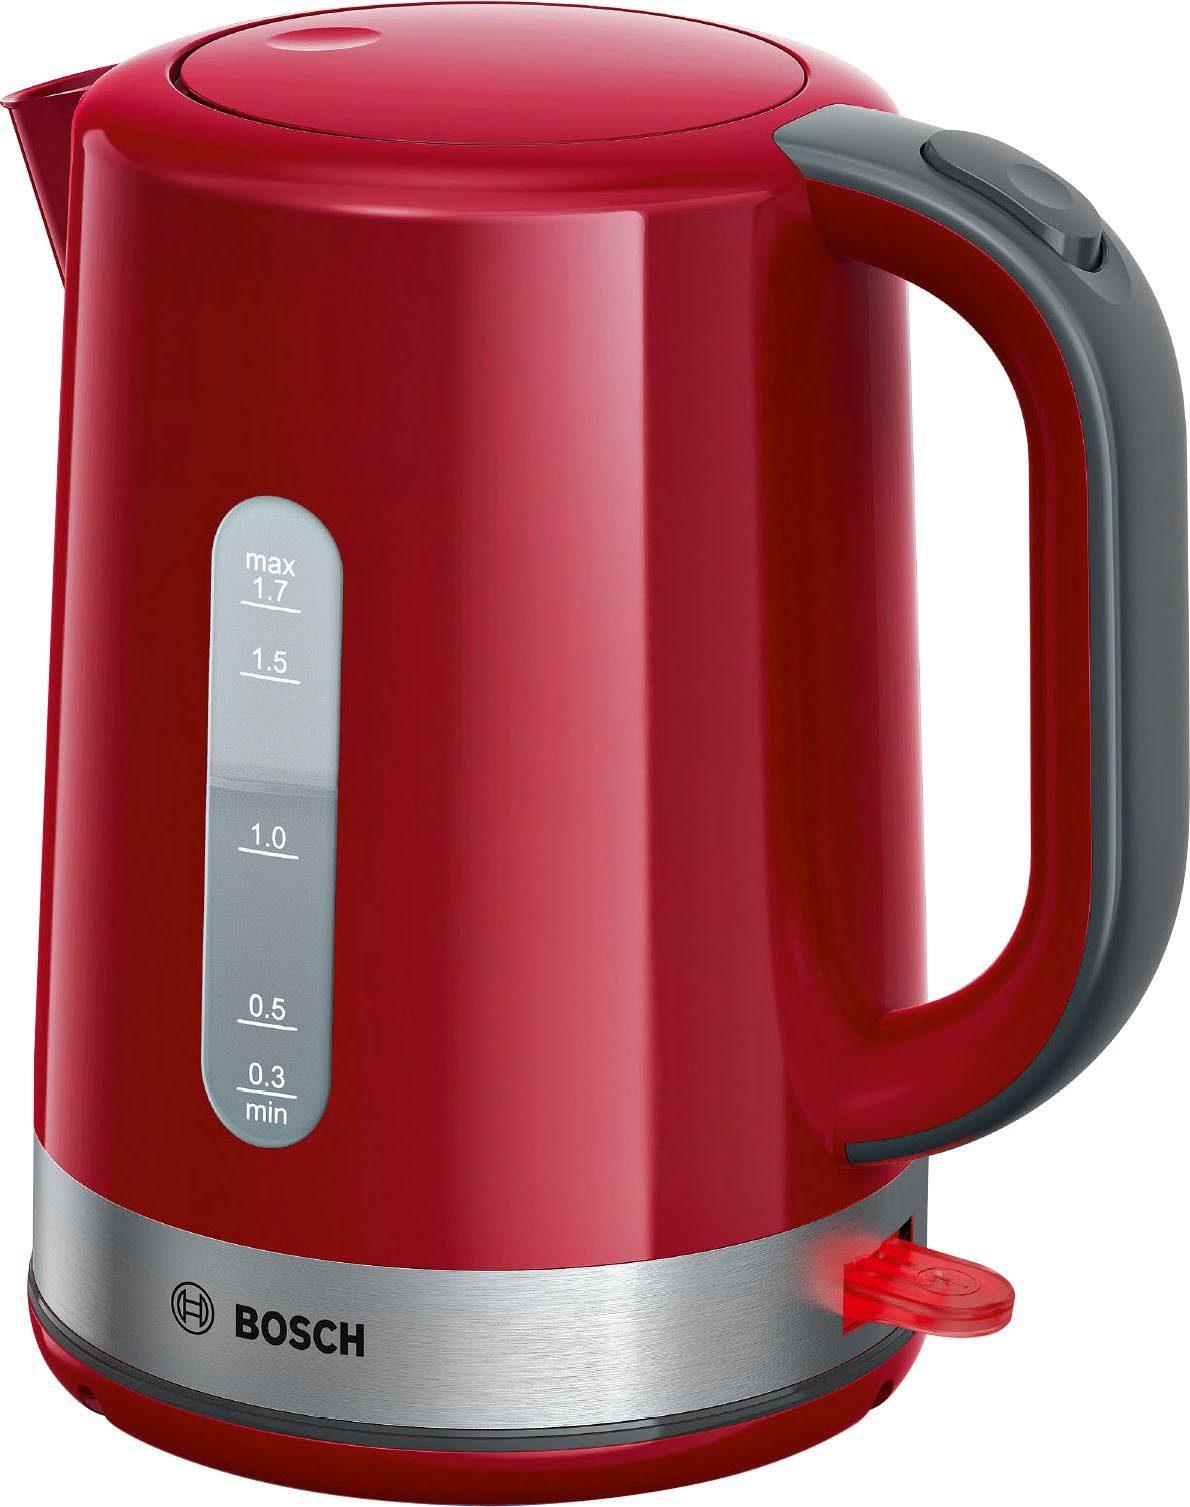 Rote Bosch Wasserkocher online kaufen | OTTO